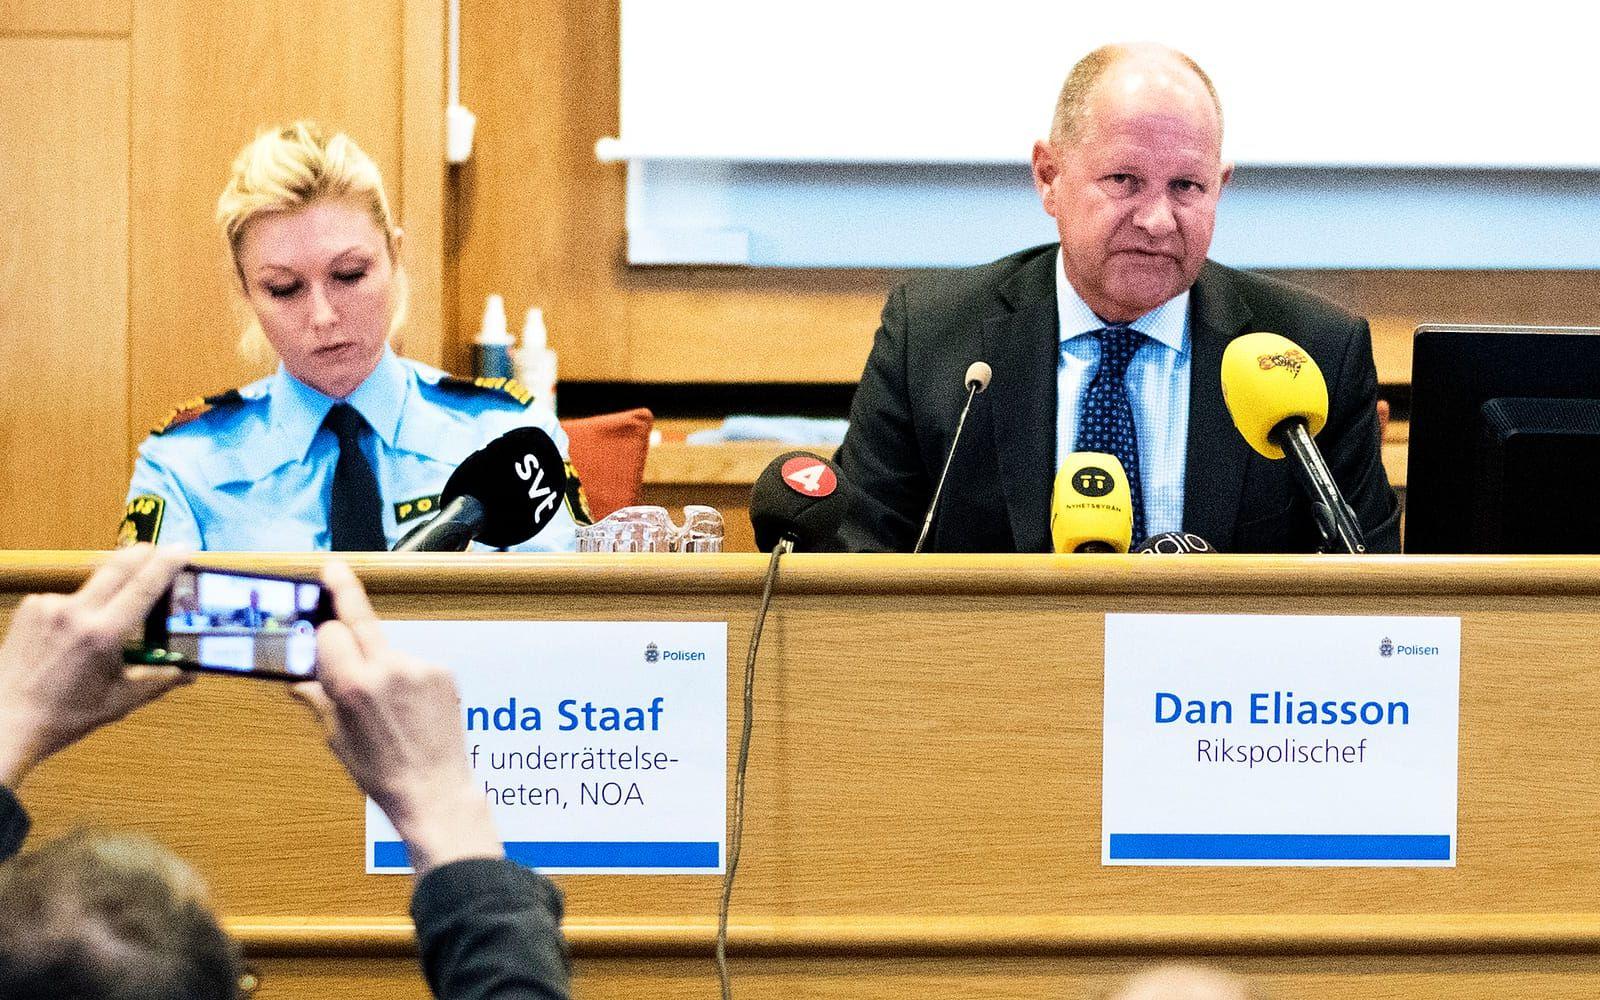 Linda Staaf, chef för underrättelseenheten, NOA, och rikspolischef Dan Eliasson. FOTO: Björn Larsson Rosvall
